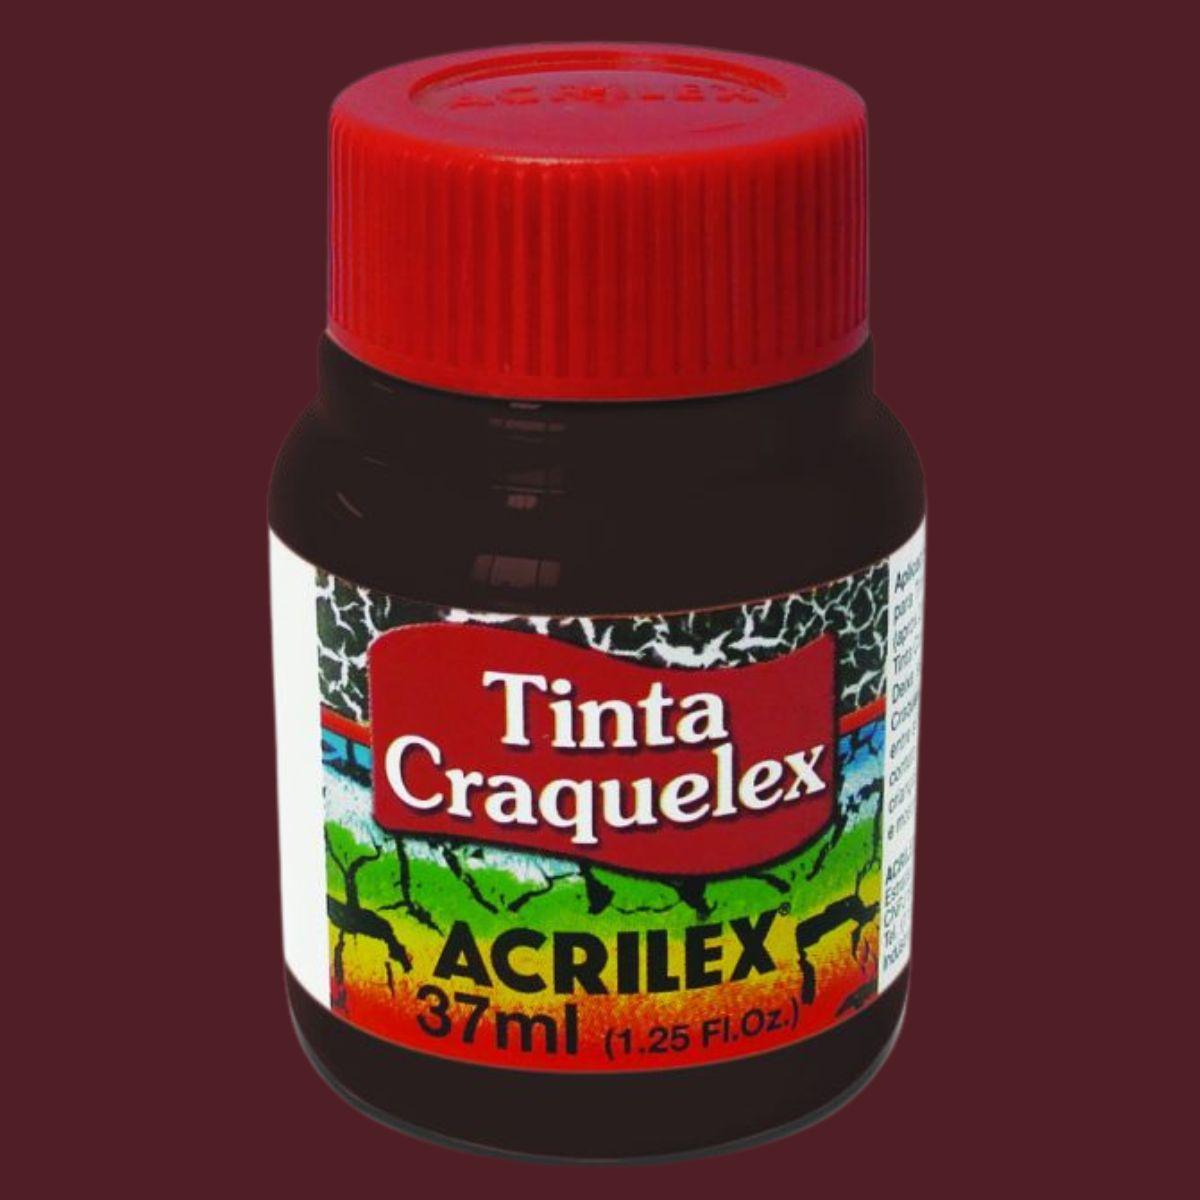 Tinta Craquelex Acrilex 37ml com efeito Craquelado - Palácio da Arte